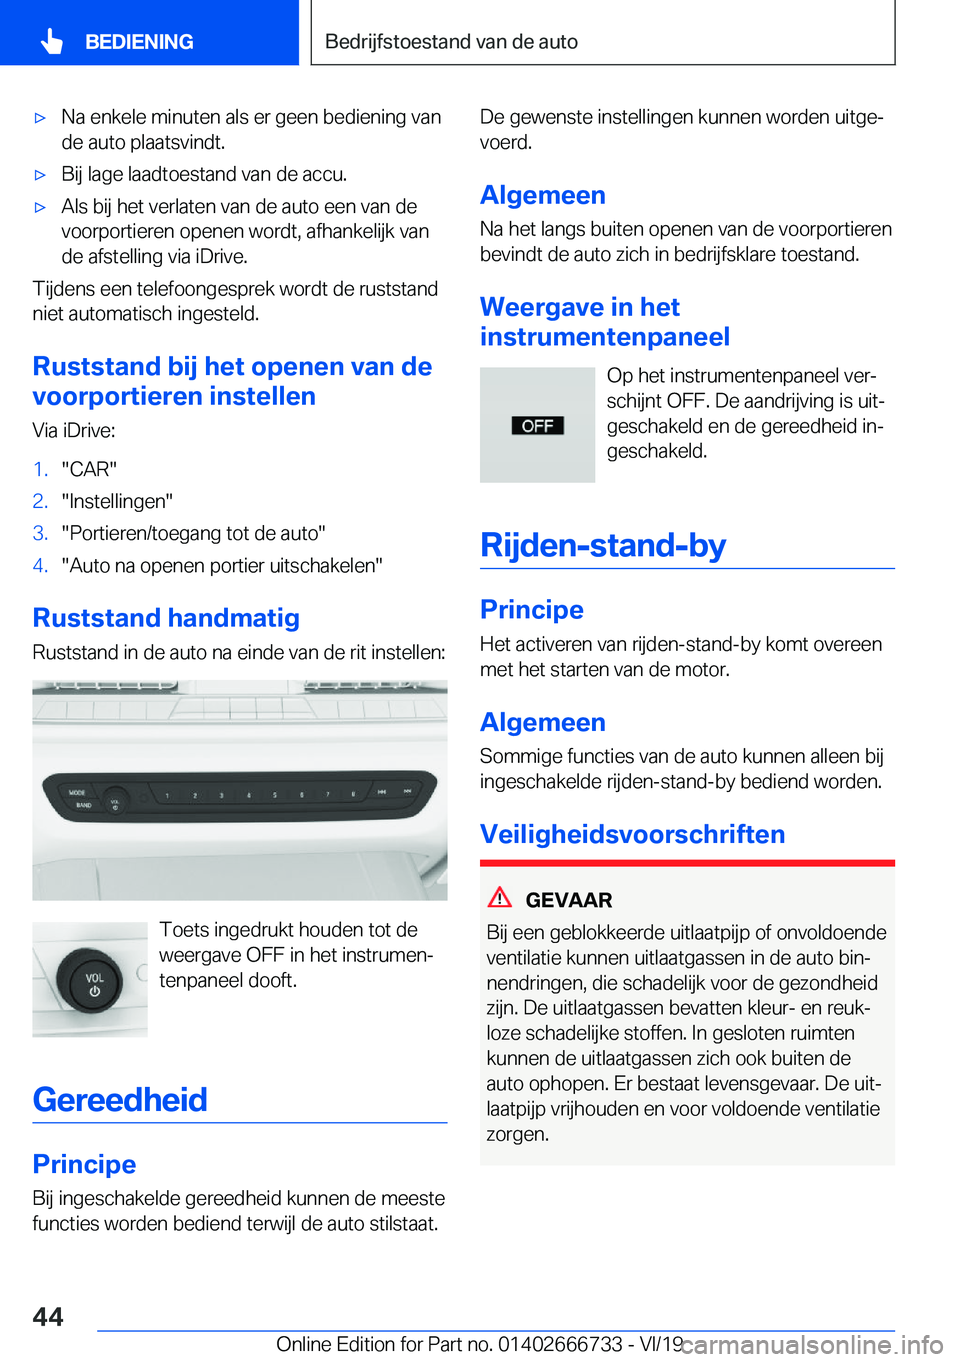 BMW M5 2020  Instructieboekjes (in Dutch) 'x�N�a��e�n�k�e�l�e��m�i�n�u�t�e�n��a�l�s��e�r��g�e�e�n��b�e�d�i�e�n�i�n�g��v�a�n�d�e��a�u�t�o��p�l�a�a�t�s�v�i�n�d�t�.'x�B�i�j��l�a�g�e��l�a�a�d�t�o�e�s�t�a�n�d��v�a�n��d�e��a�c